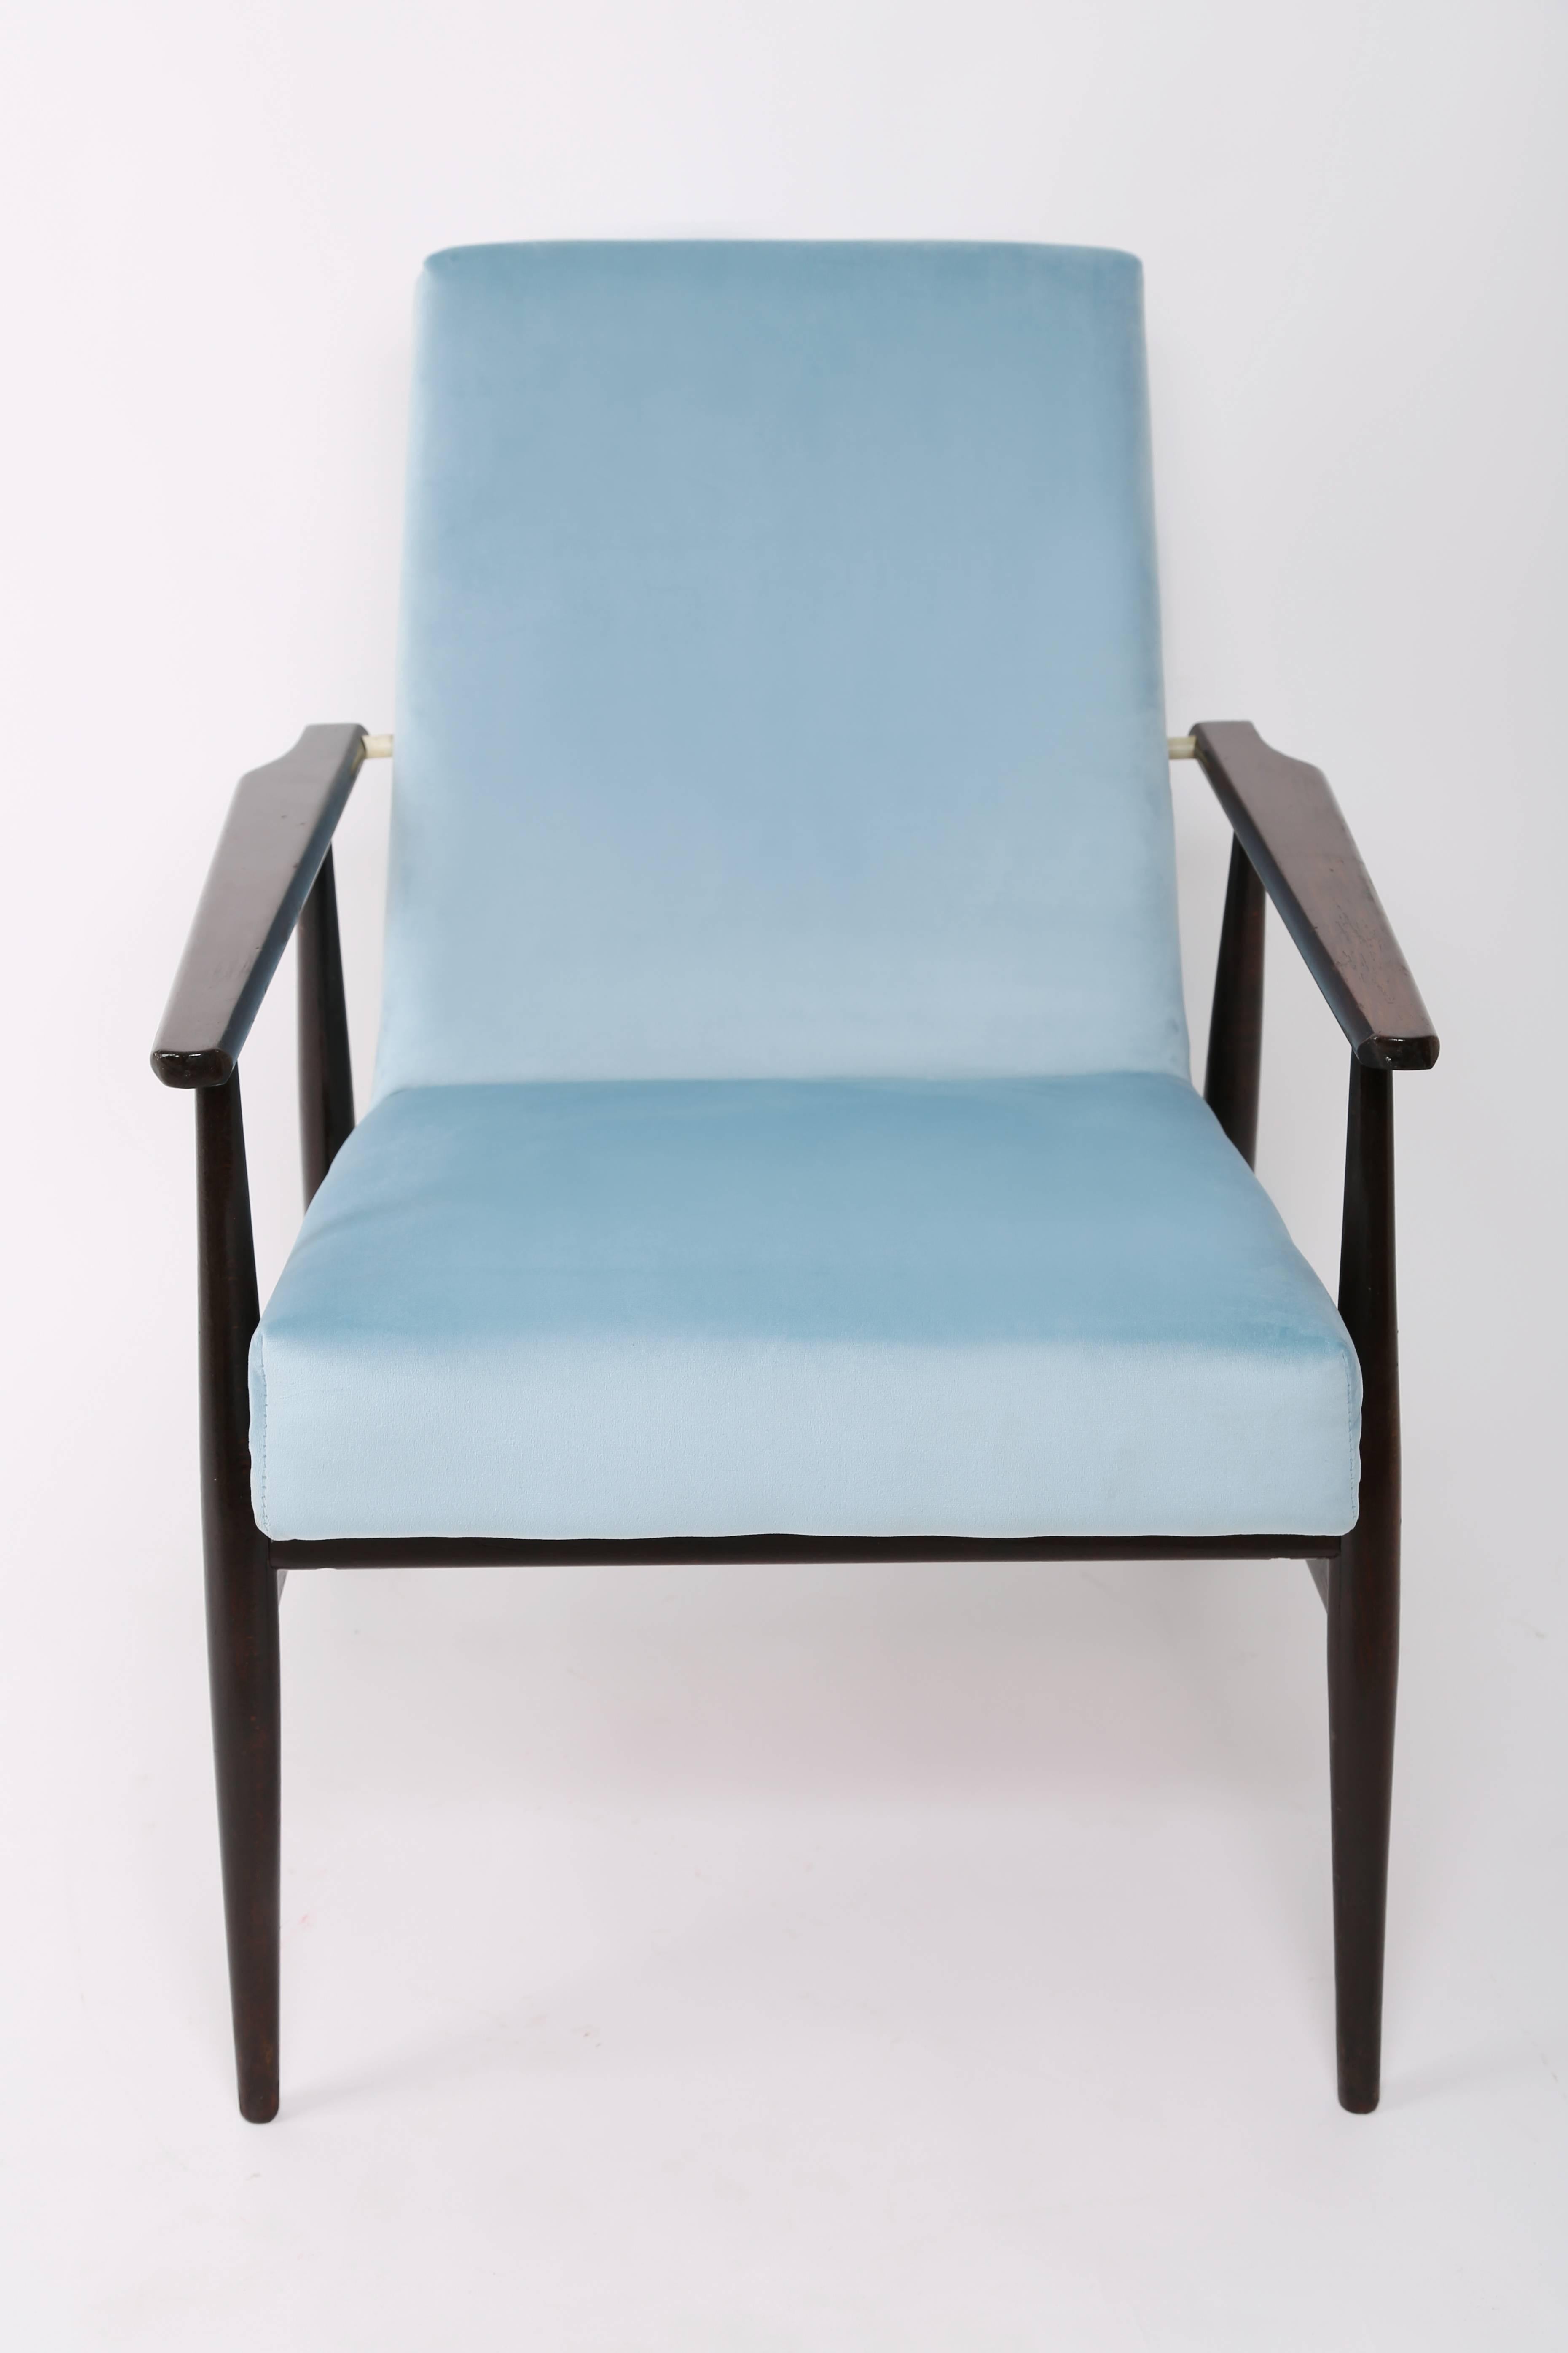 Un beau fauteuil restauré, conçu par Henryk Lis. Meubles après une rénovation complète de la menuiserie et de la tapisserie. Le tissu, qui est recouvert d'un dossier et d'une assise, est un revêtement en velours de haute qualité. Le fauteuil sera